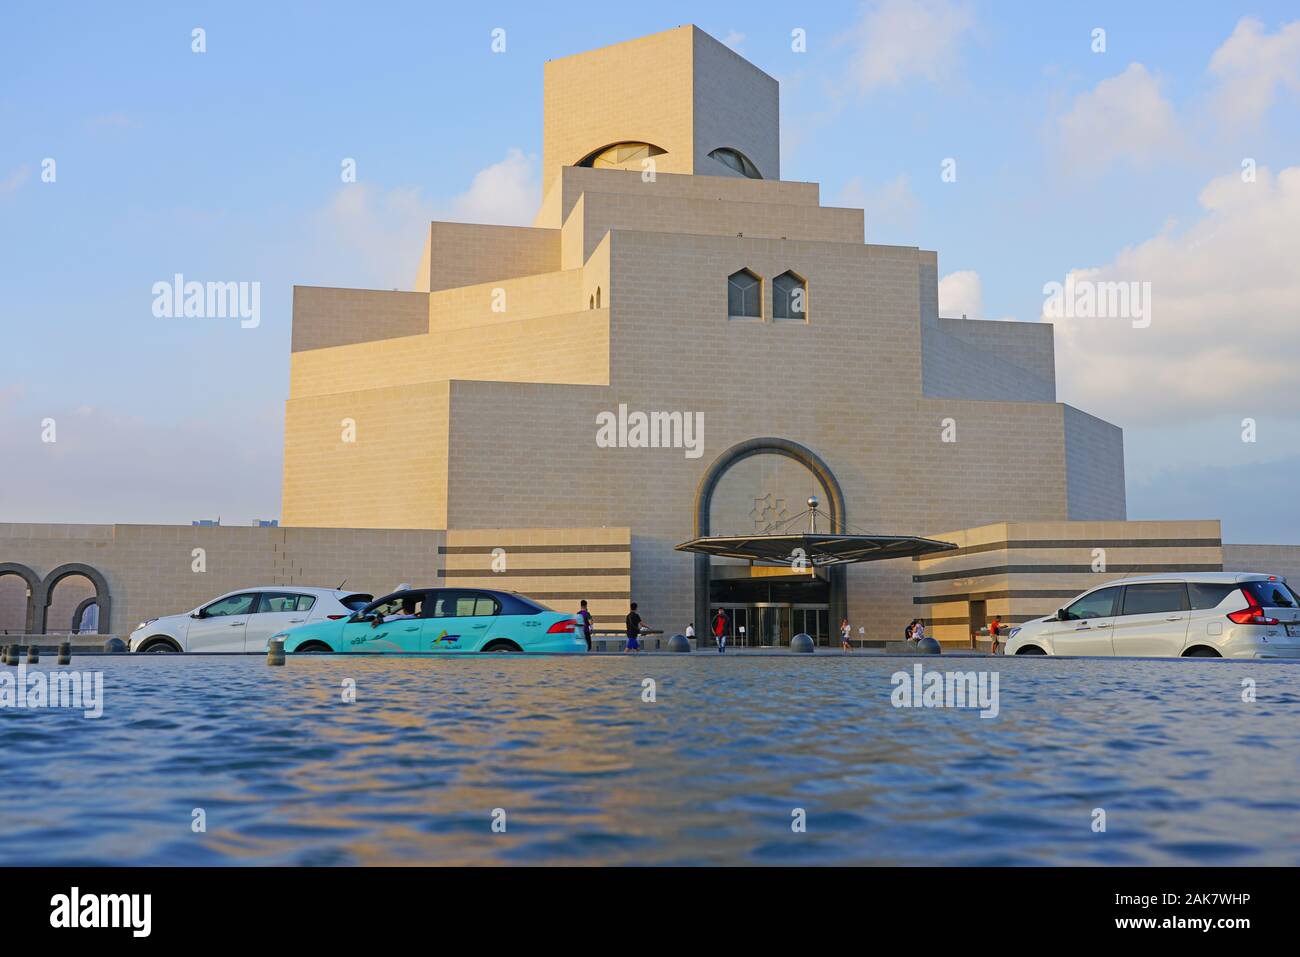 DOHA, Qatar-11 Dez 2019 - Blick auf die berühmten Museum für Islamische Kunst Gebäude, entworfen vom Architekten I.M.Pei, eröffnet im Jahr 2008, die in Doha Corni entfernt Stockfoto